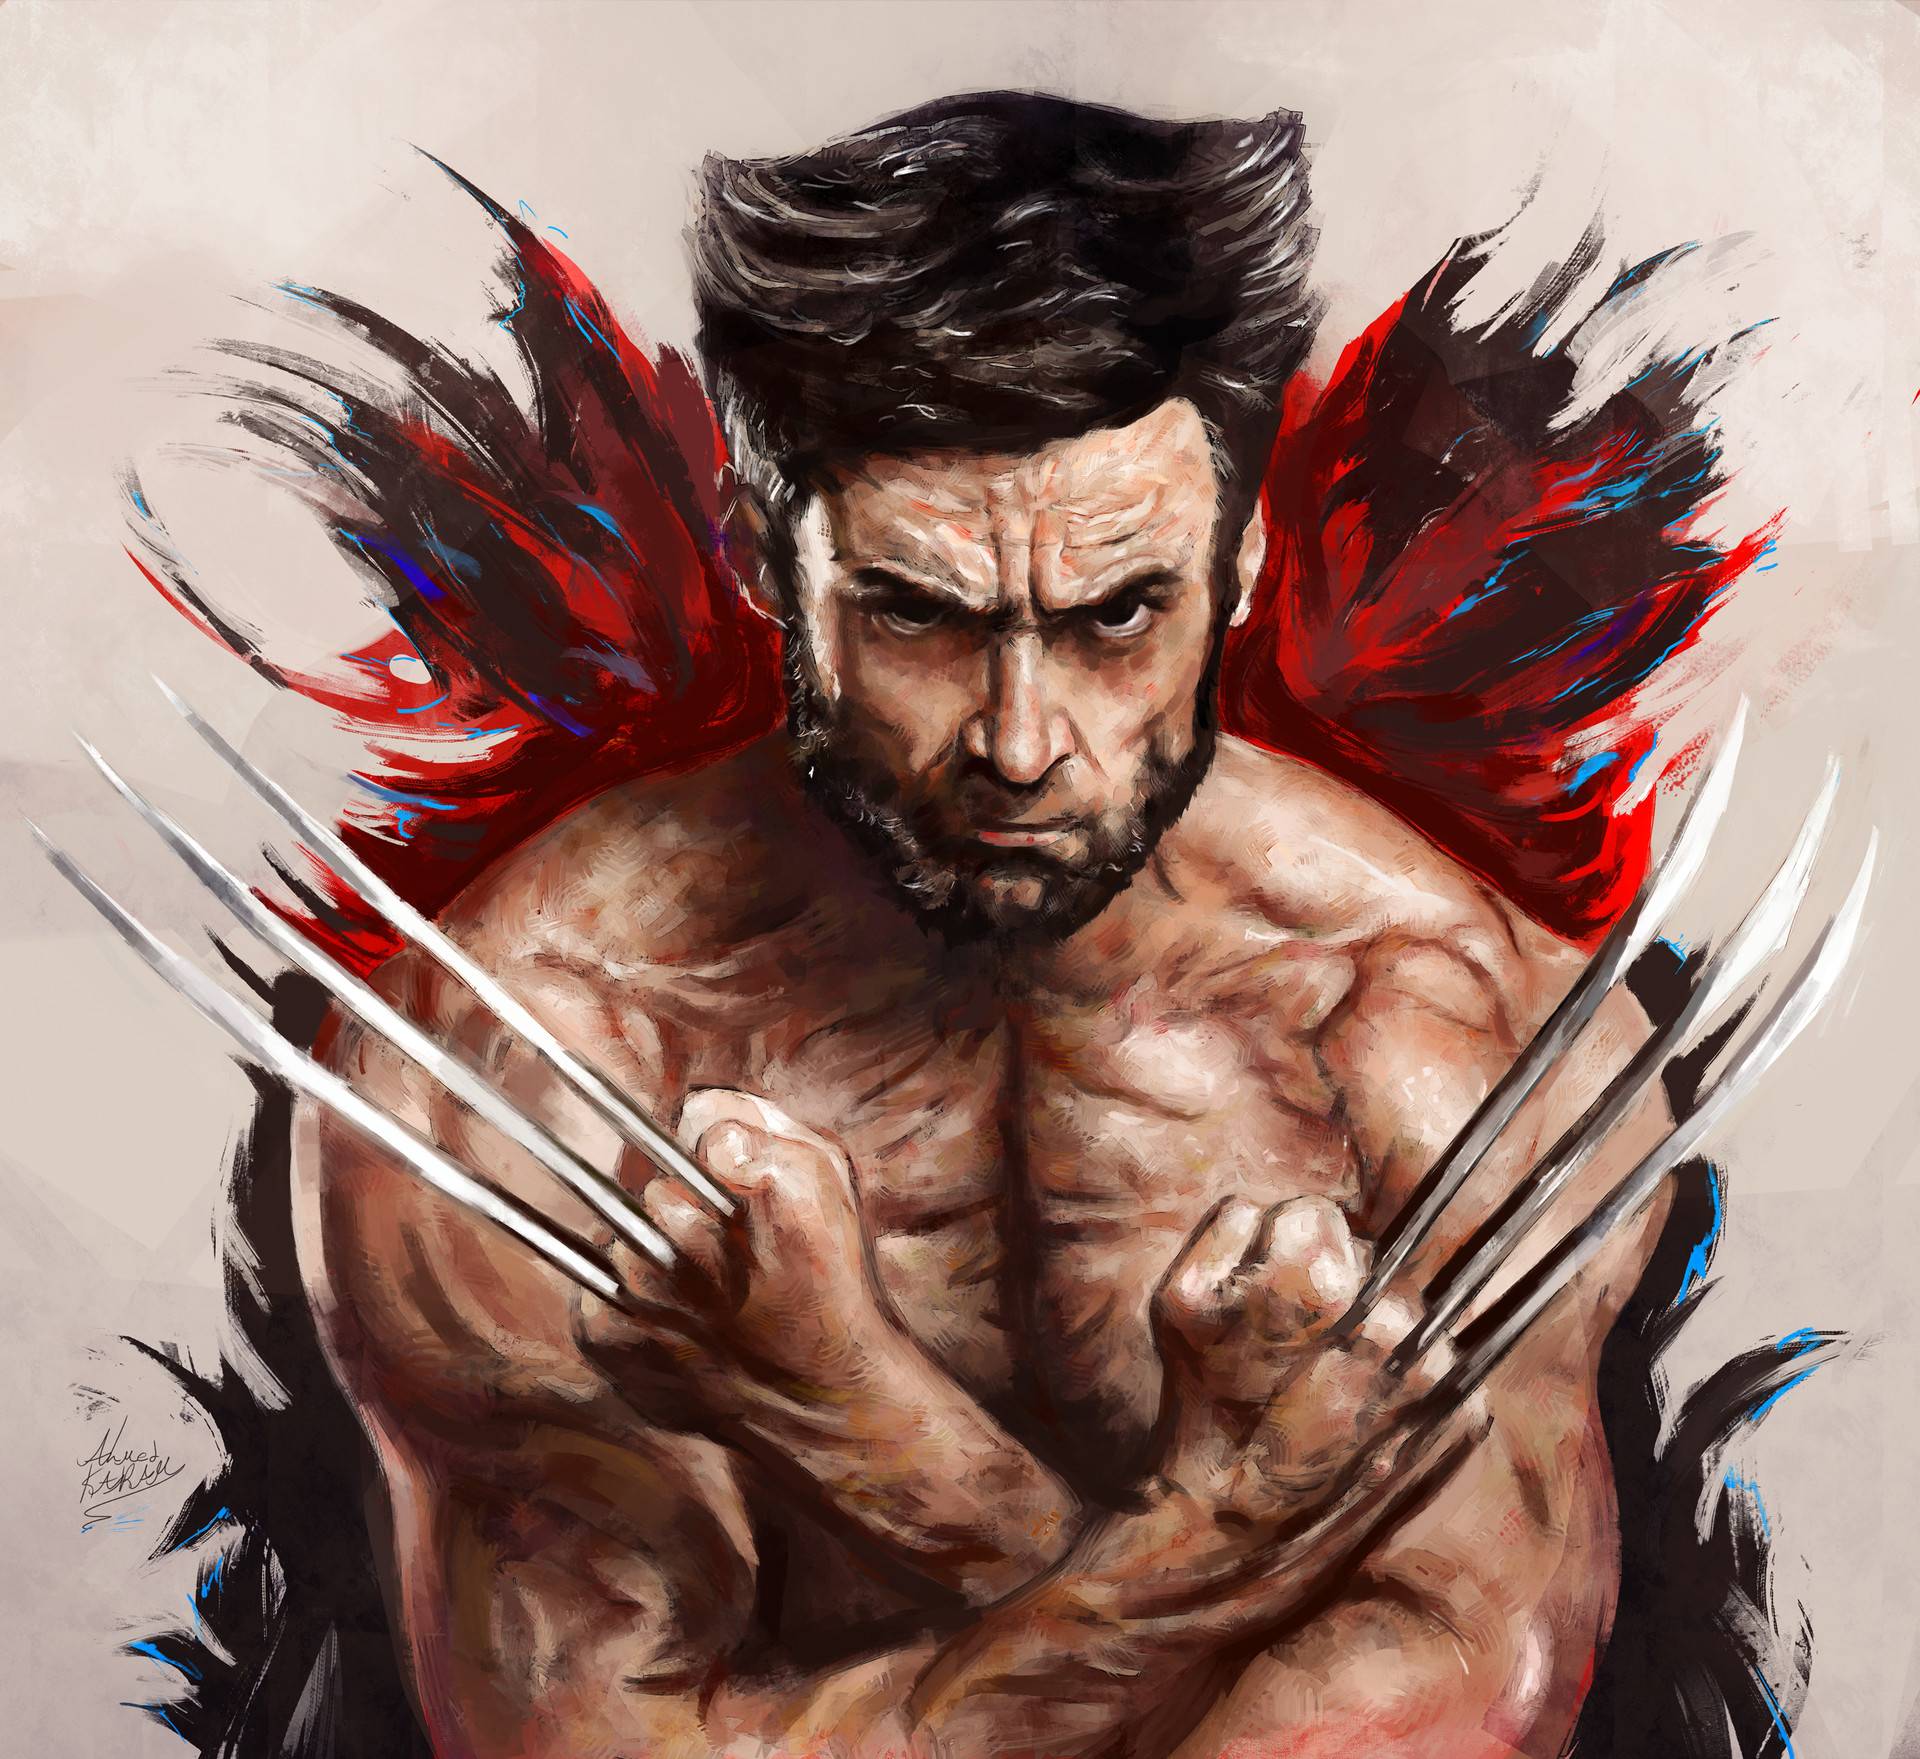 Wolverine Fanart 2020 Wallpapers